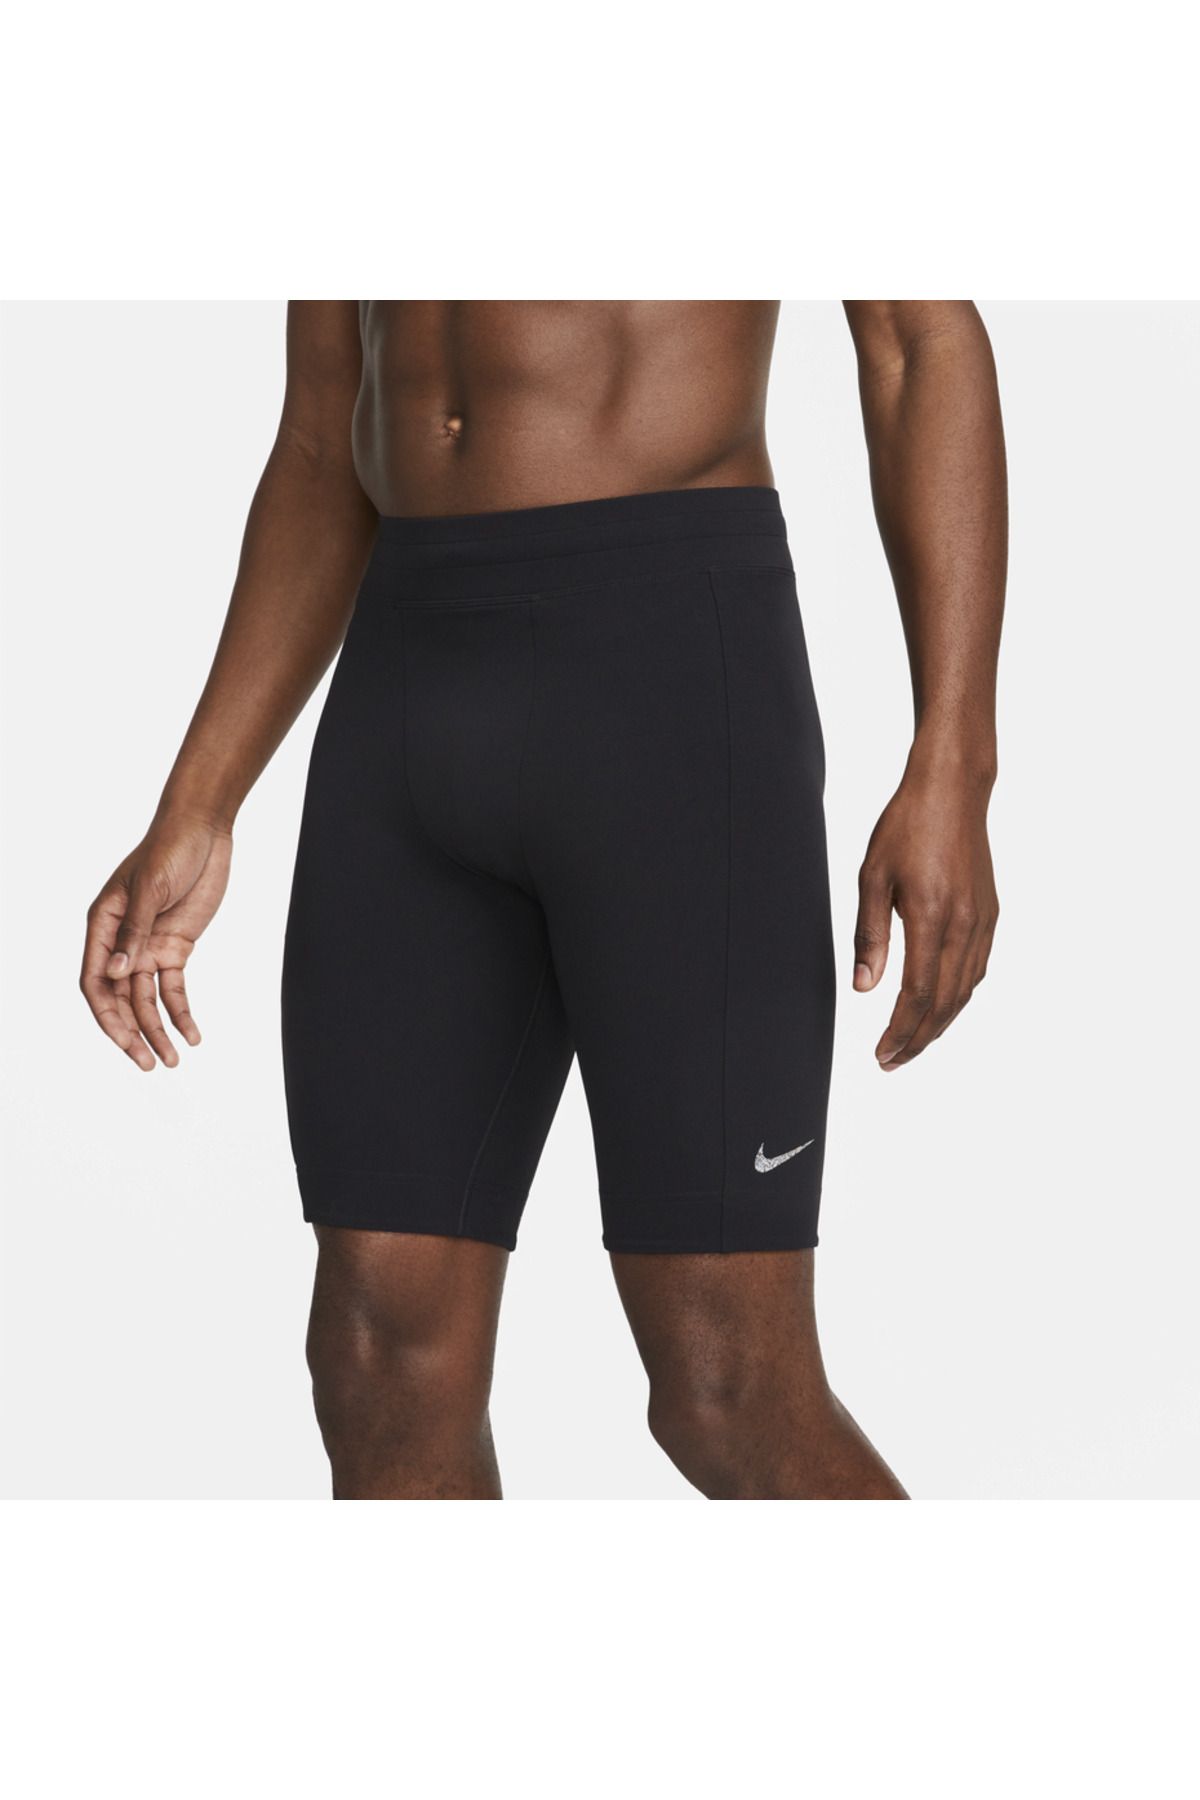 Nike Yoga Dri-FIT Erkek Siyah Kısa Tayt DQ4890-010